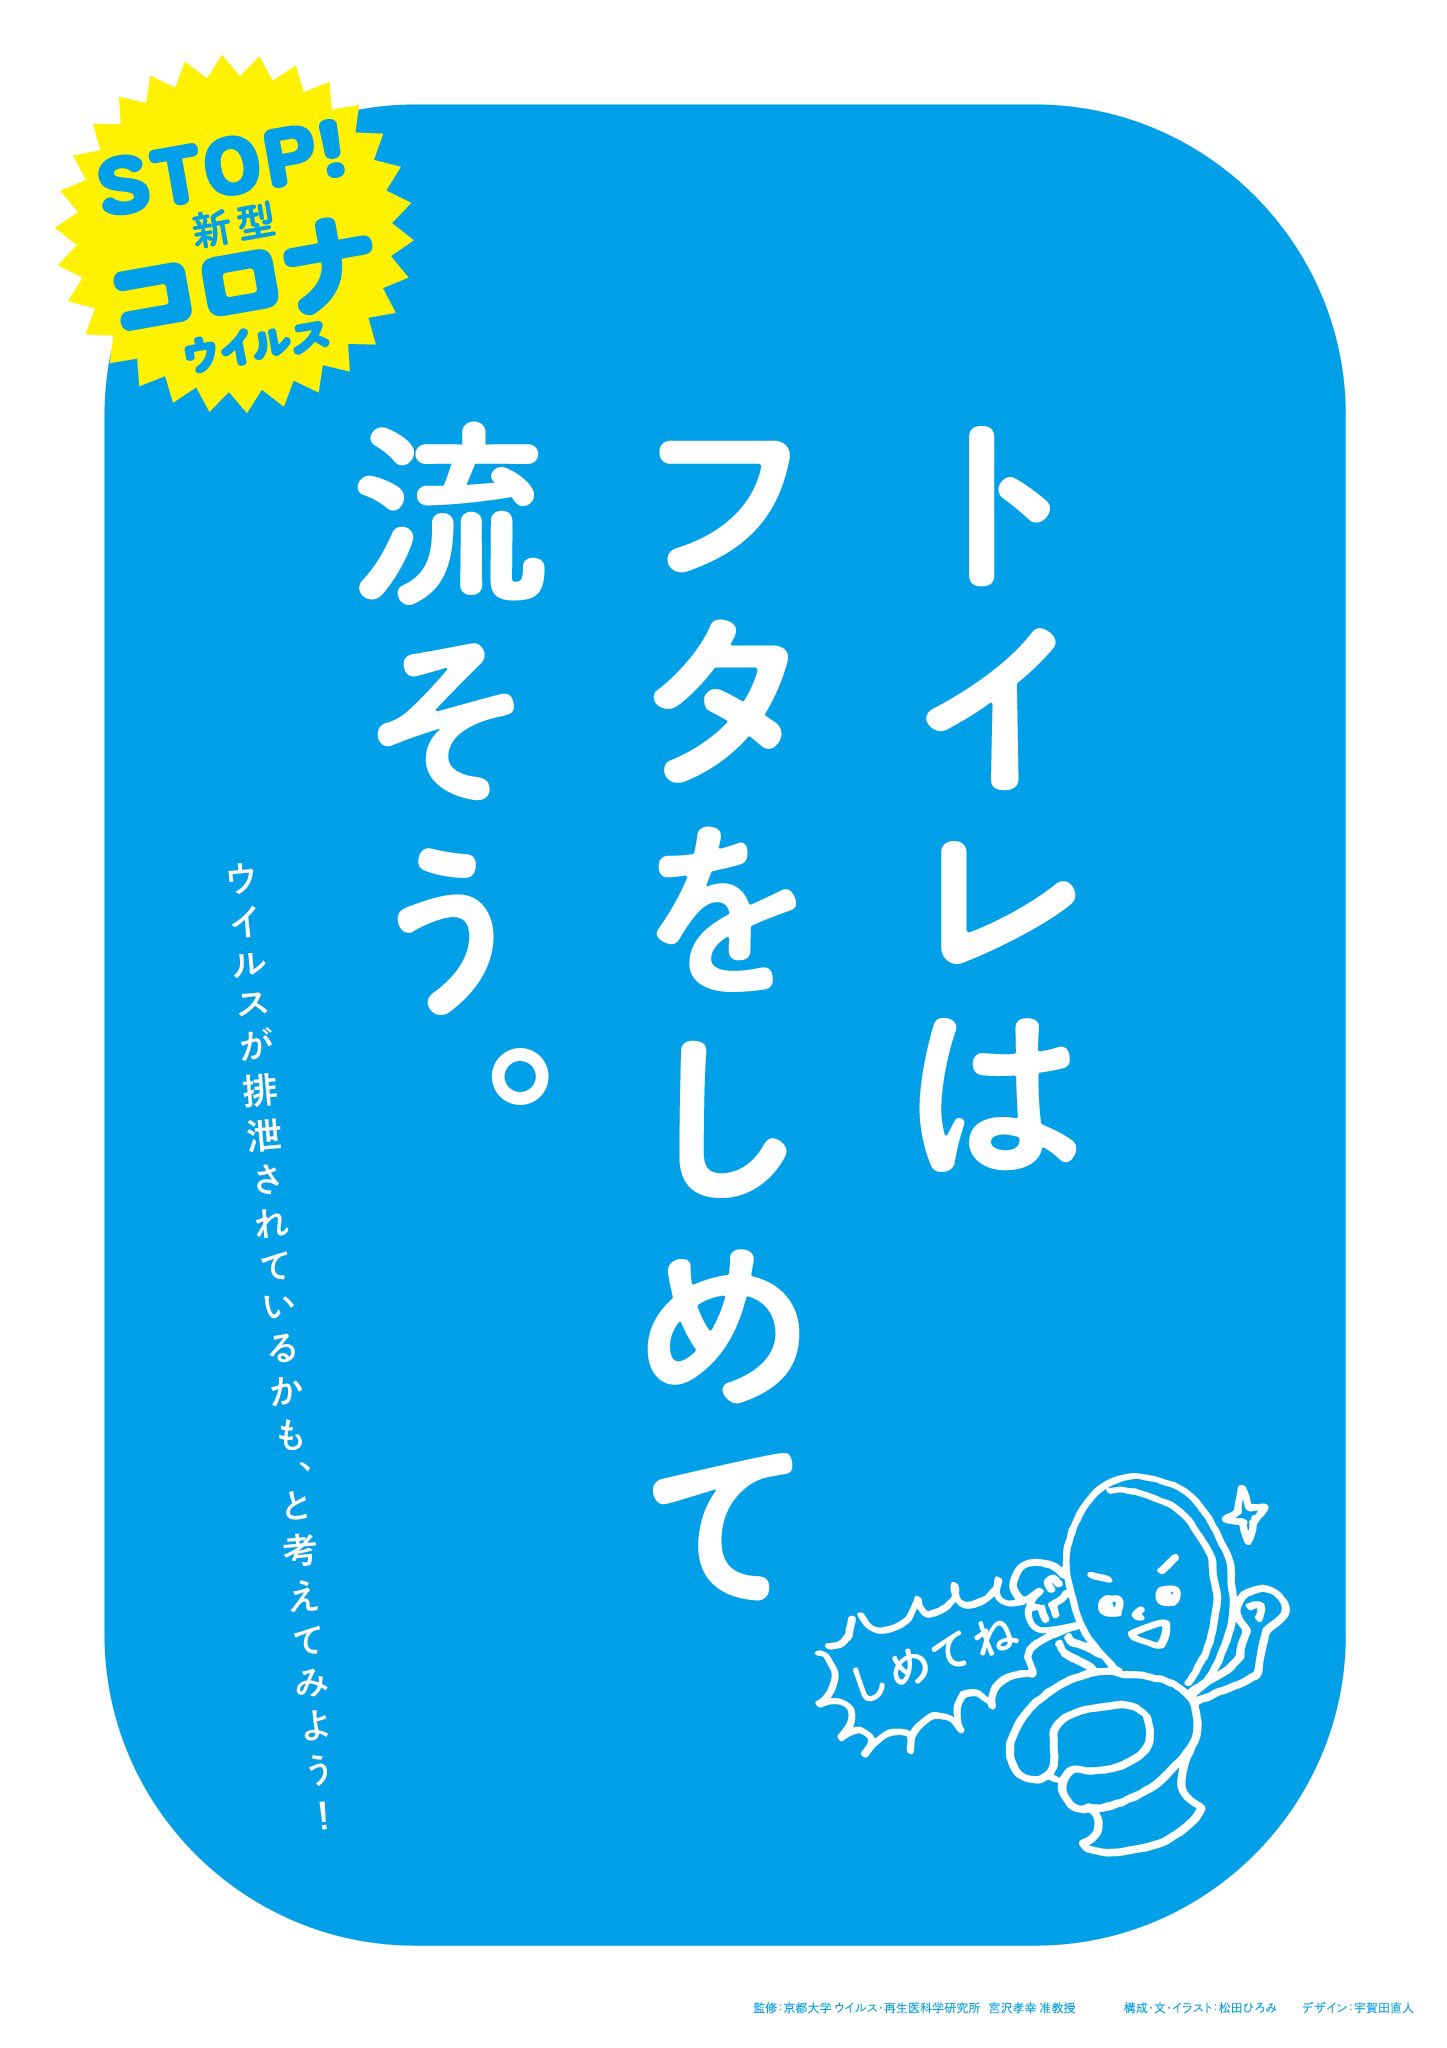 Hiromi Fujii コロナ対策おうちポスター プリンターからa4で印刷できます 家族みんなで予防しよう 気になるものがあれば印刷して玄関などにどうぞ ハンカチもった マスクした 買い物はすいてる時間に トイレはフタをしめて流そう 監修 京都大学